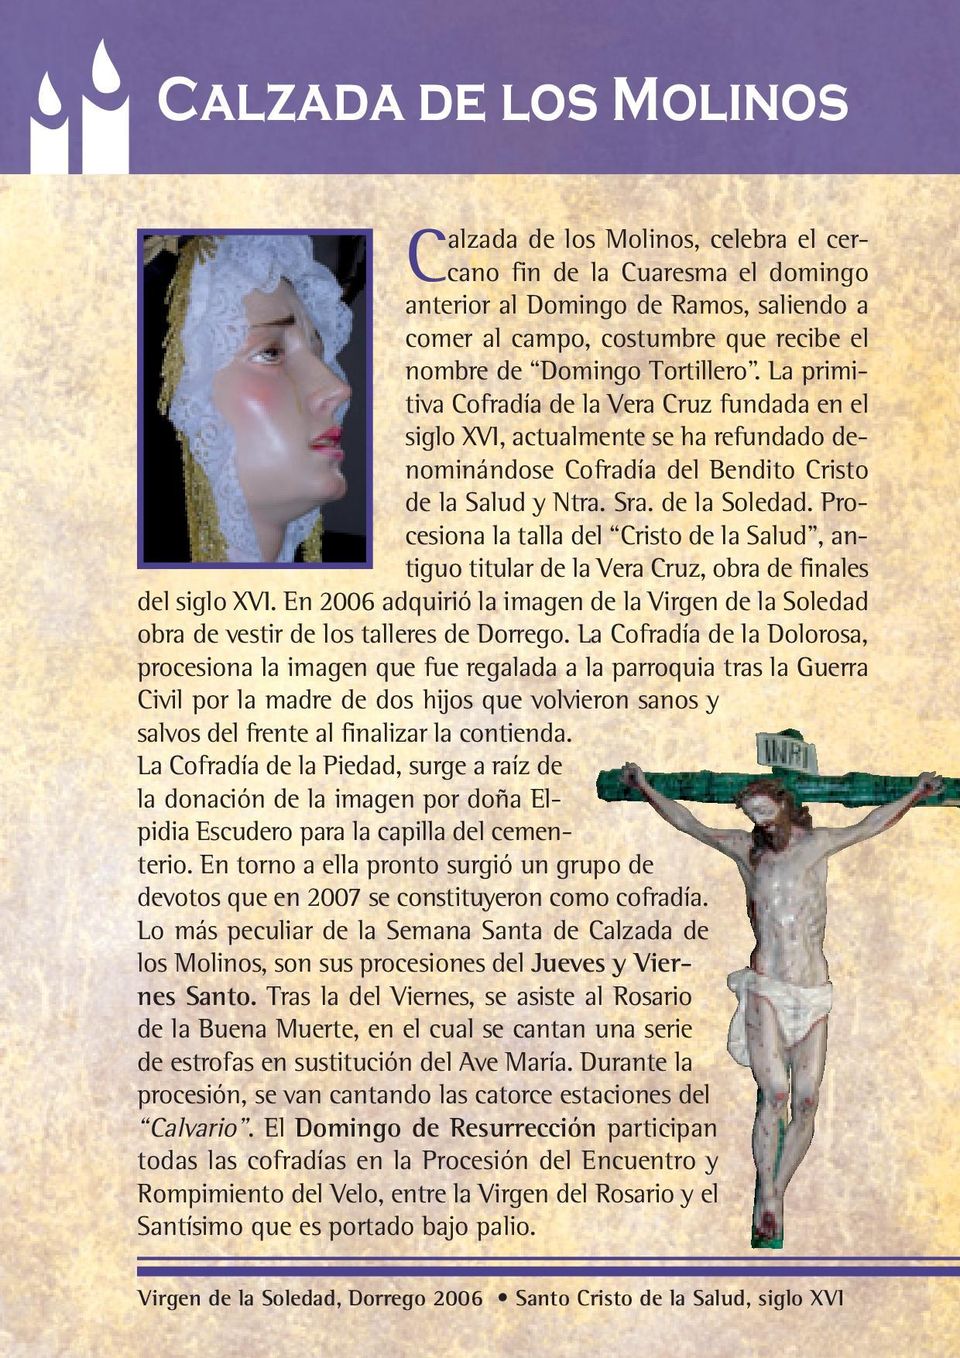 Procesiona la talla del Cristo de la Salud, antiguo titular de la Vera Cruz, obra de finales del siglo XVI.